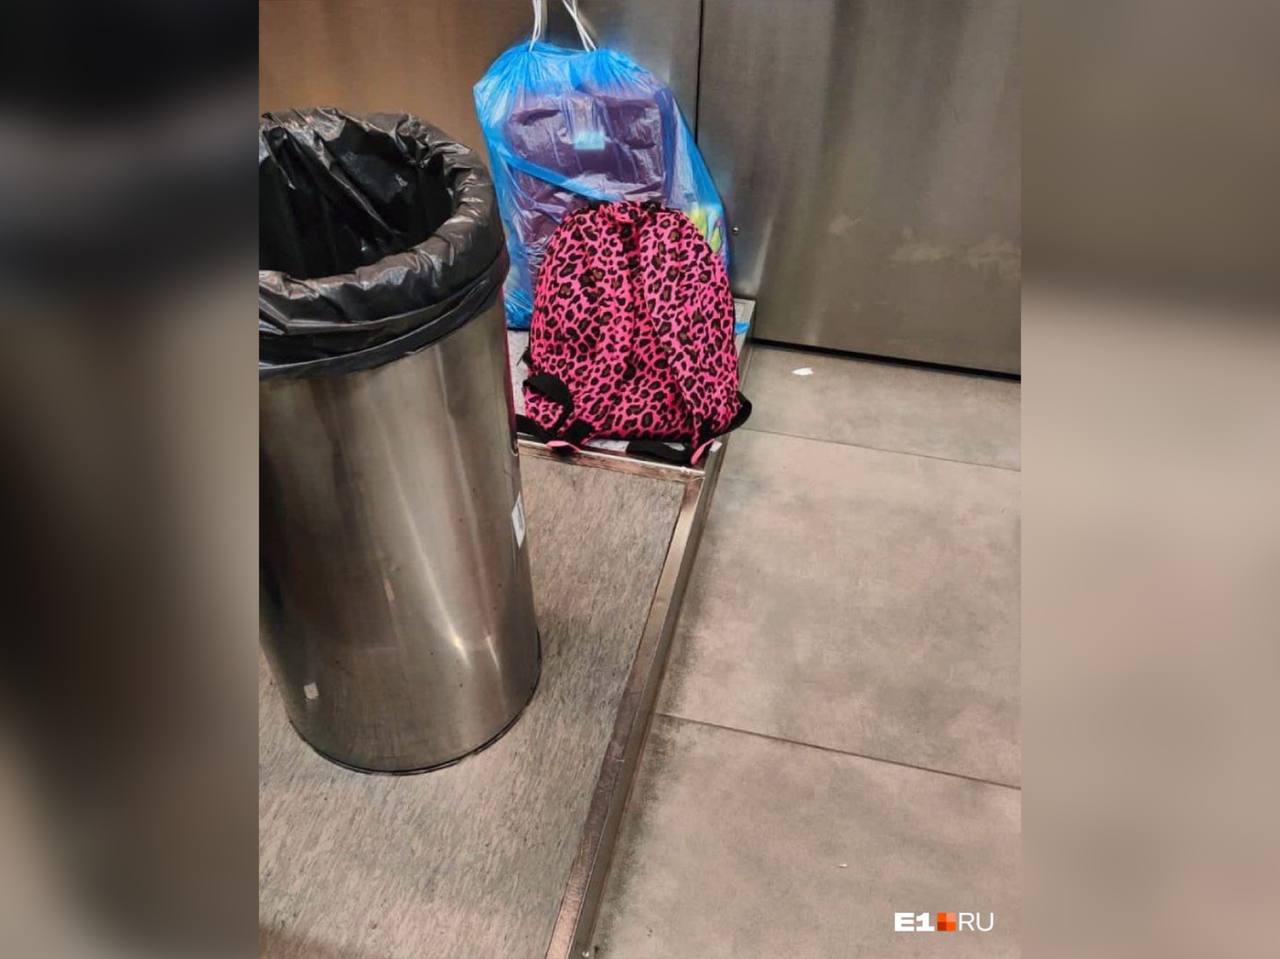 Рюкзак, в котором оставили в аэропорту Кольцово кошку-сфинкса. Фото © VK / Круглосуточные новости Екатеринбурга E1.ru